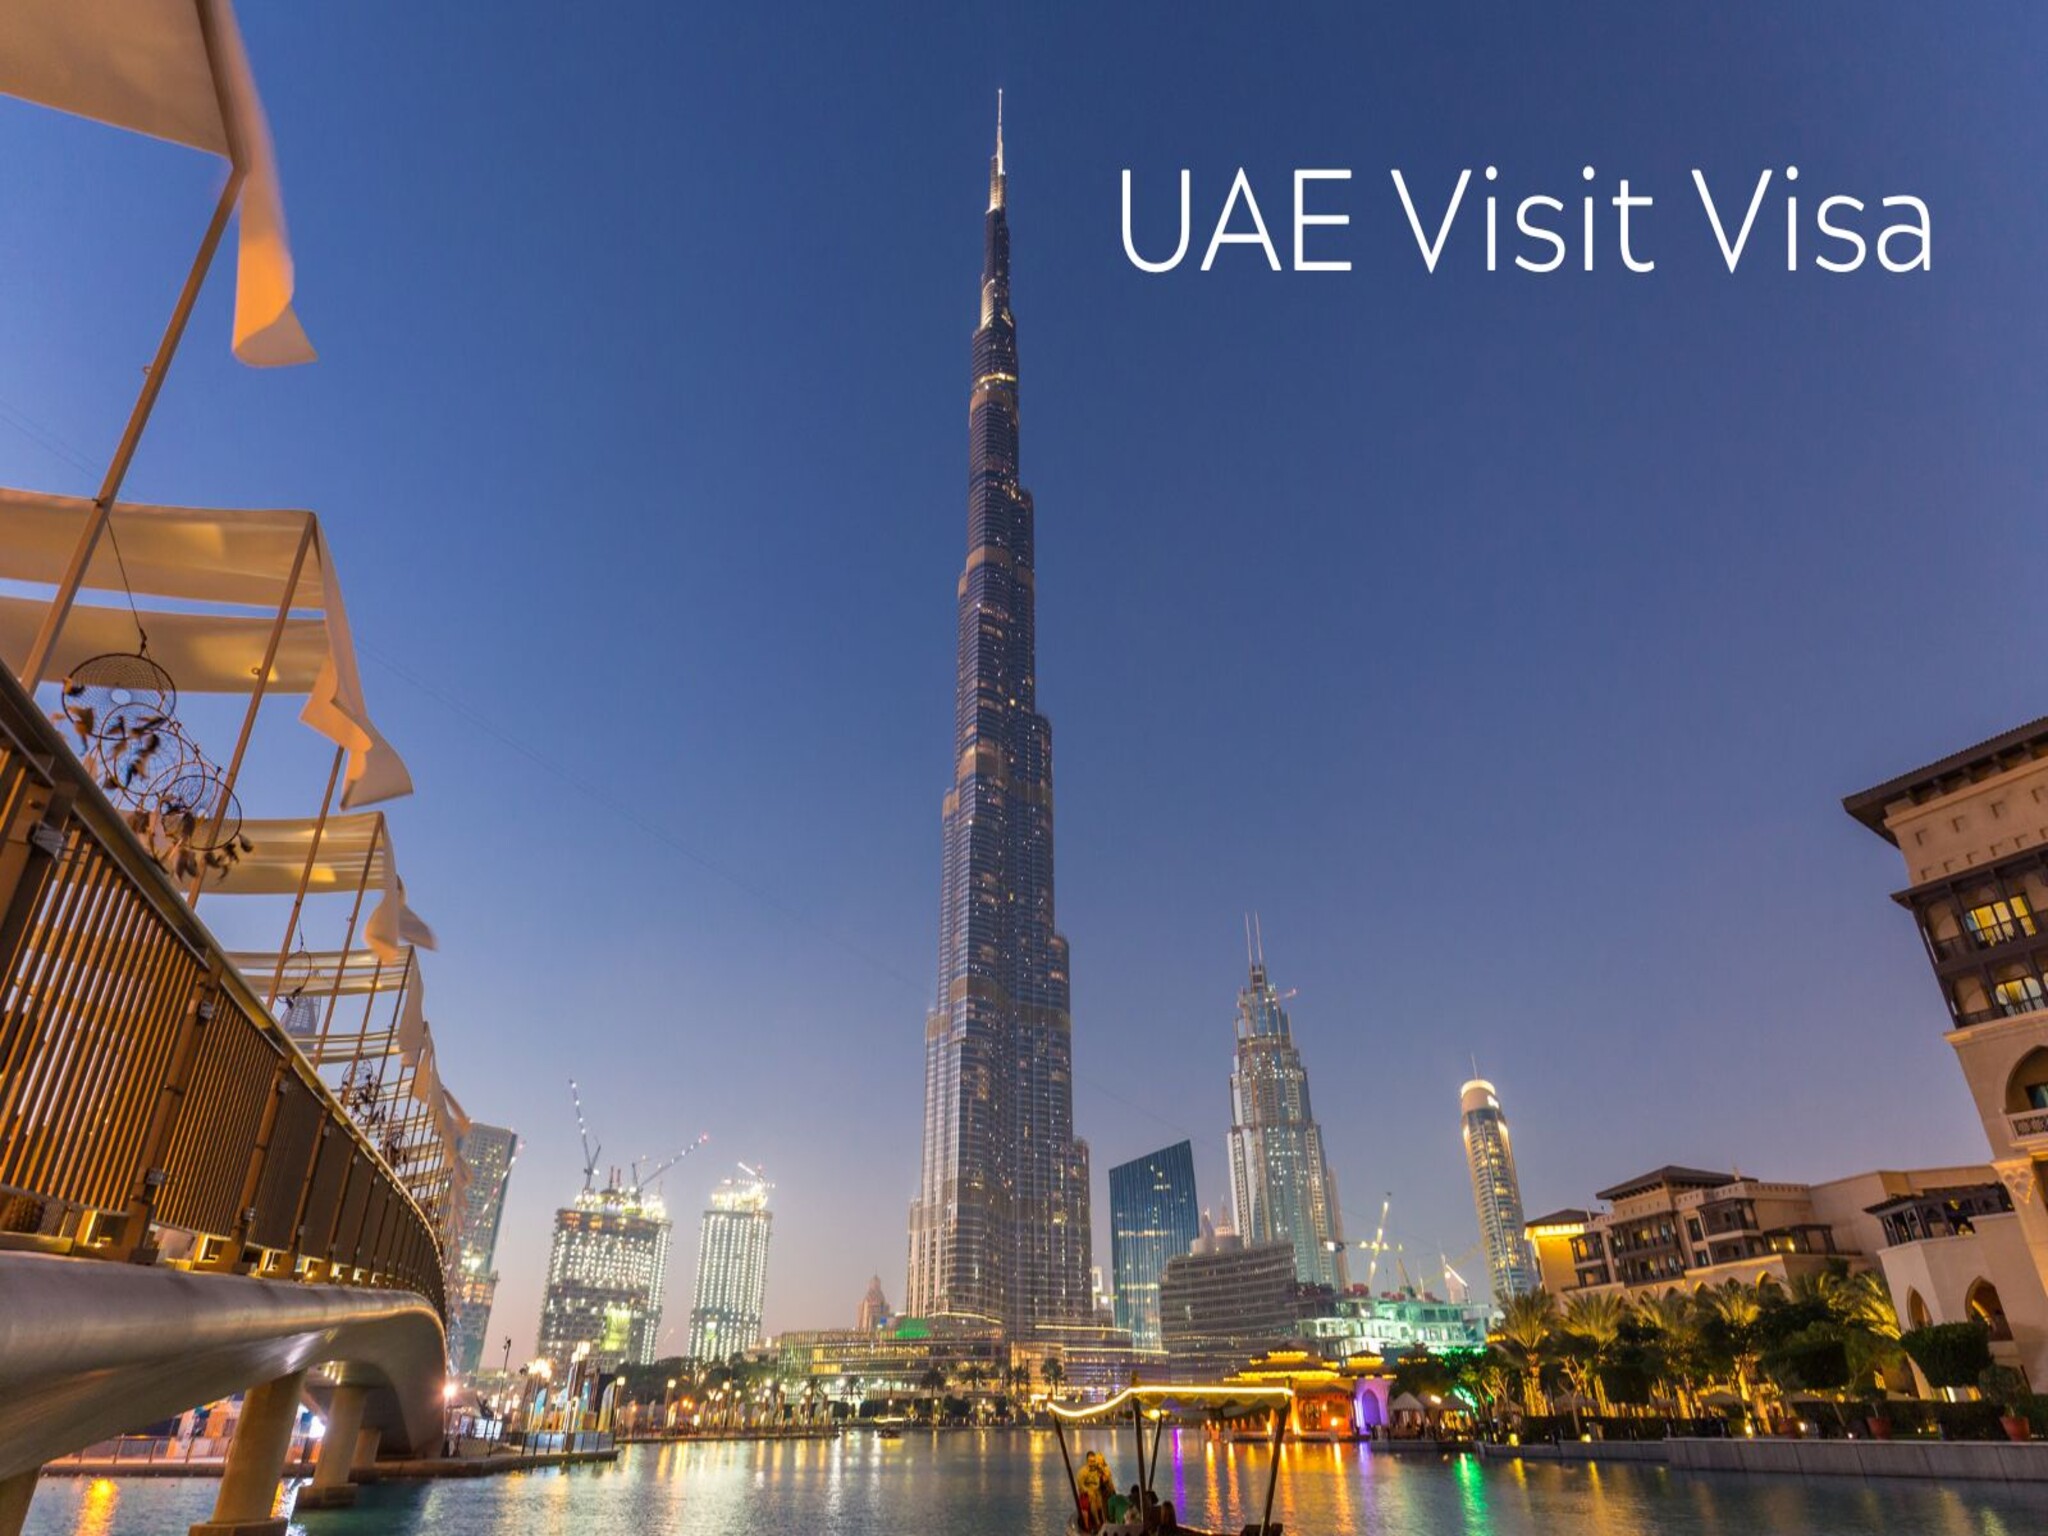 UAE Visit: Dubai Visitors Need AED3,000, Return Ticket, Accommodation Proof